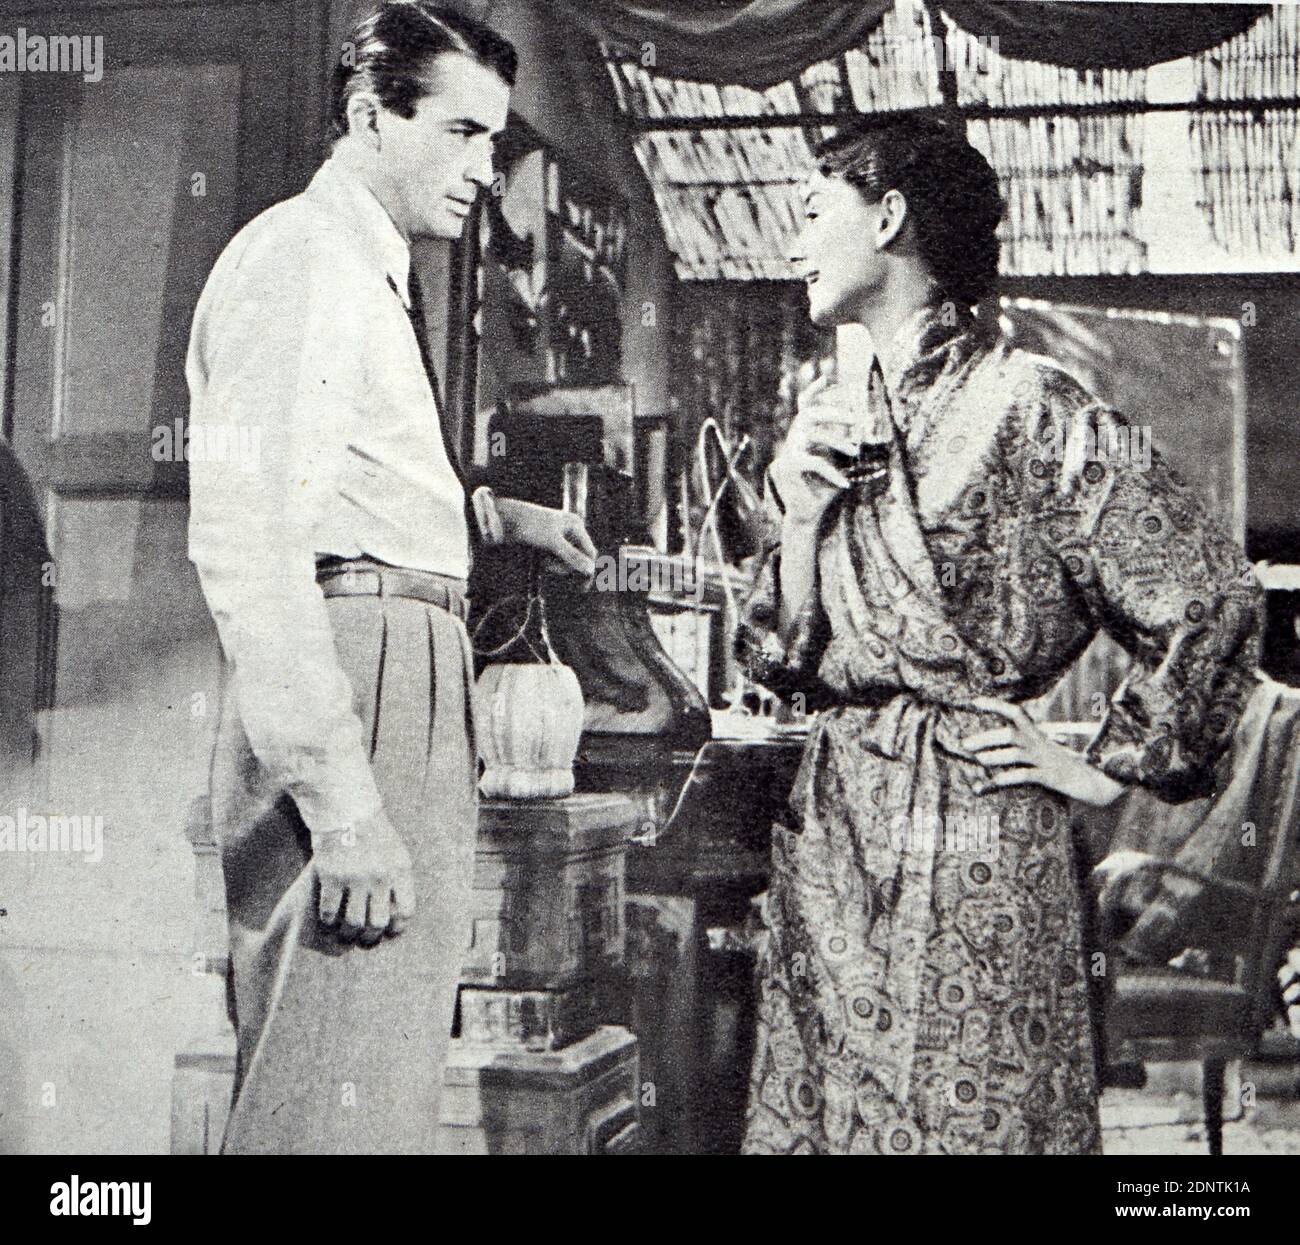 Filmstill aus 'Roman Holiday' mit Audrey Hepburn, Gregory Peck, Eddie Albert und Hartley Power. Stockfoto